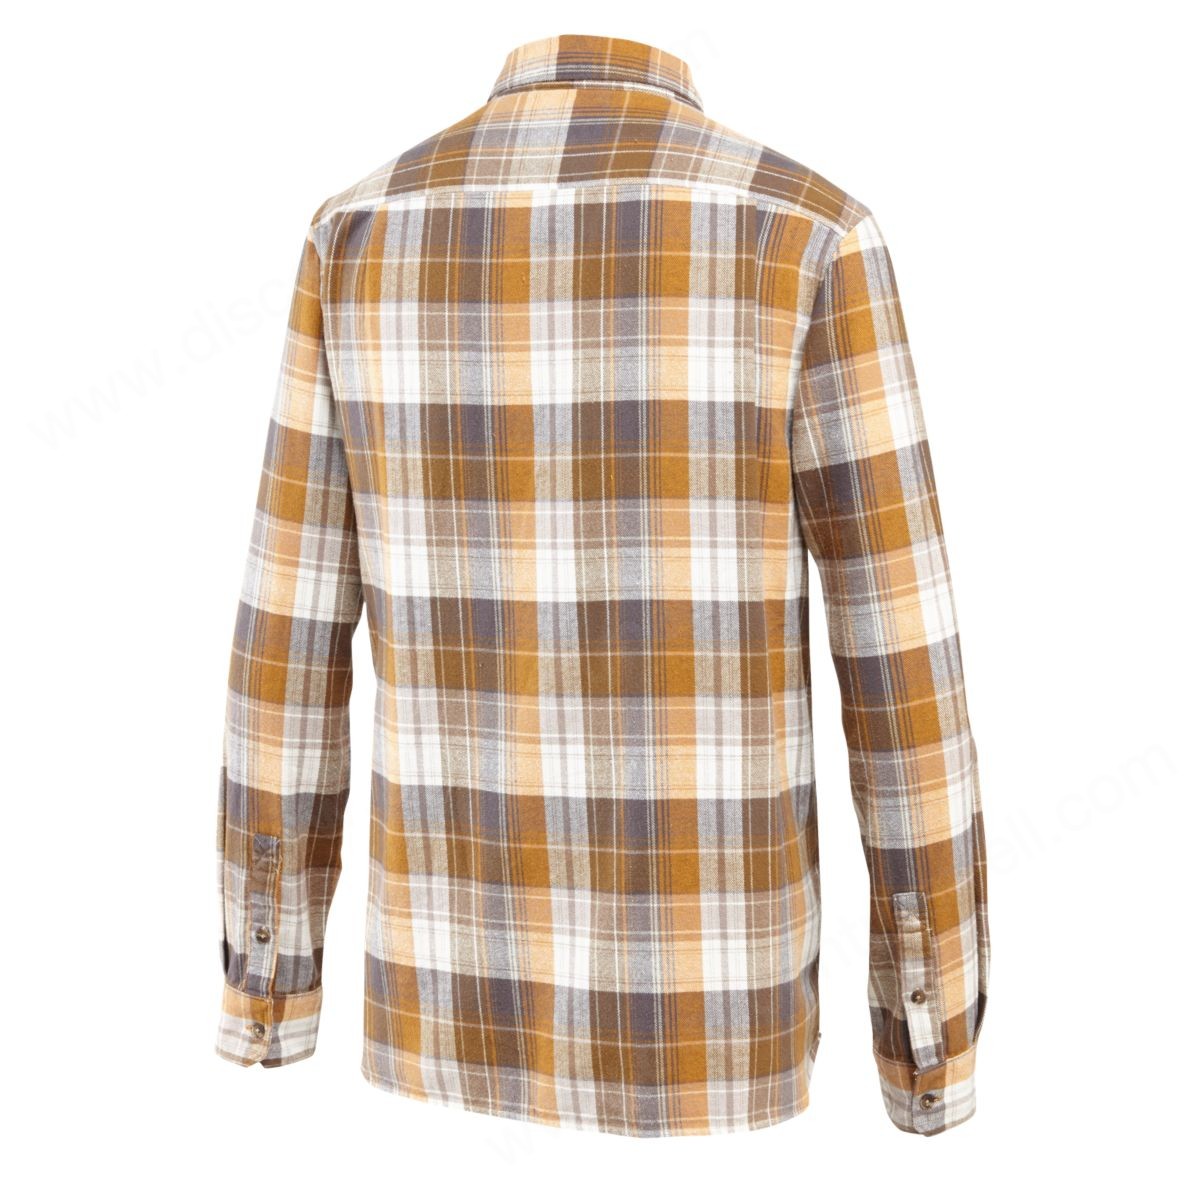 Merrell Mens's Oslo Flannel Tshirt Beech Plaid - -1